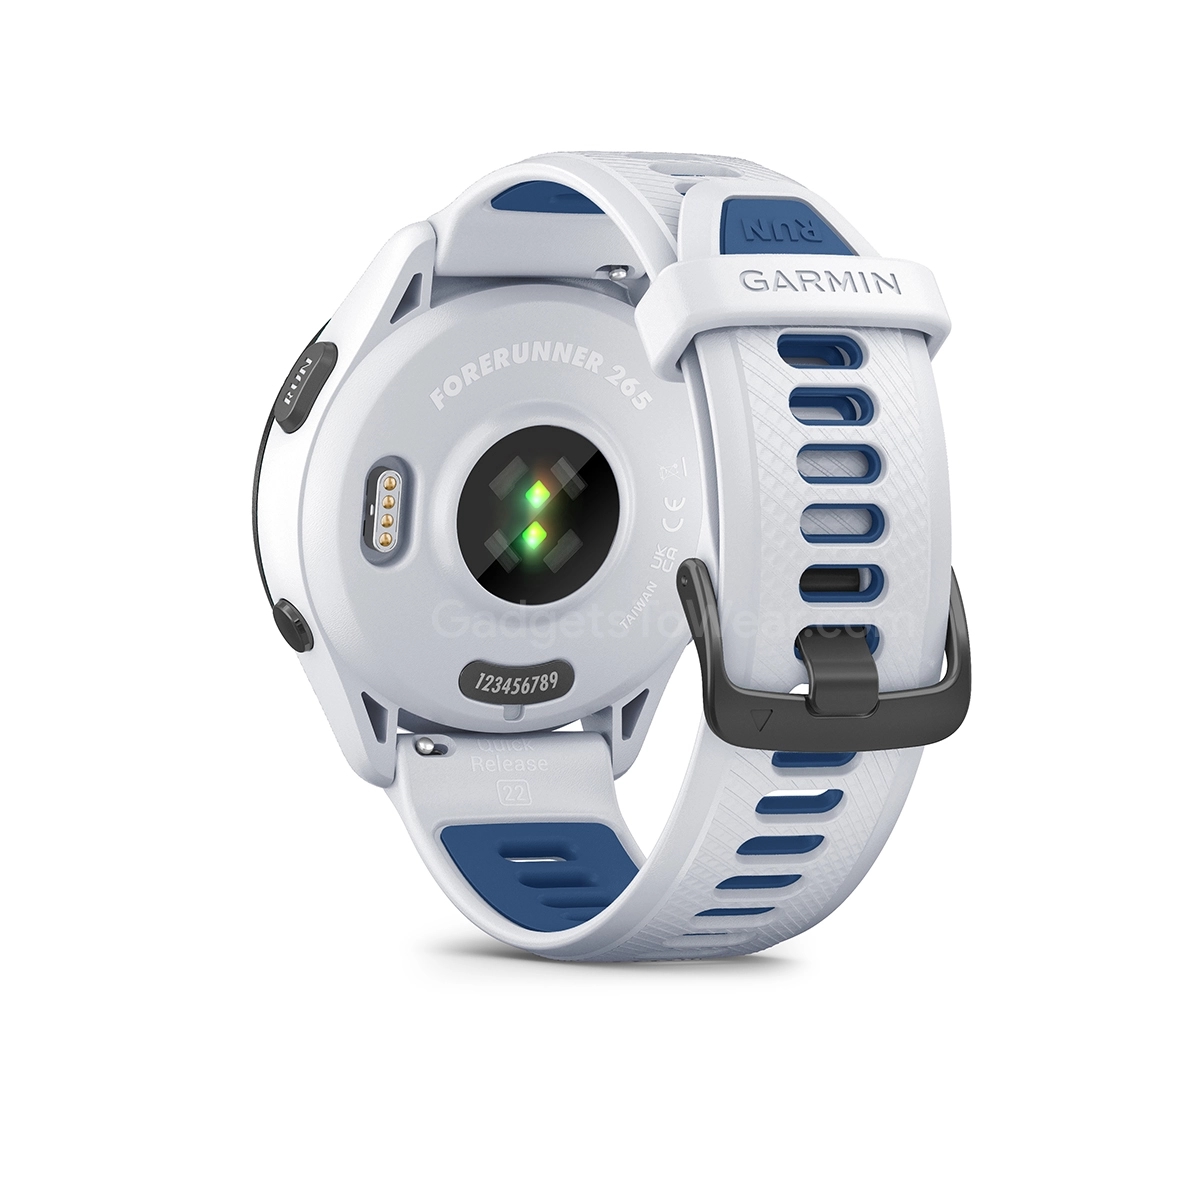 Garmin lanza los deportivos smartwatches Forerunner 265 y Forerunner 265s  con pantallas AMOLED y hasta 13 días de batería